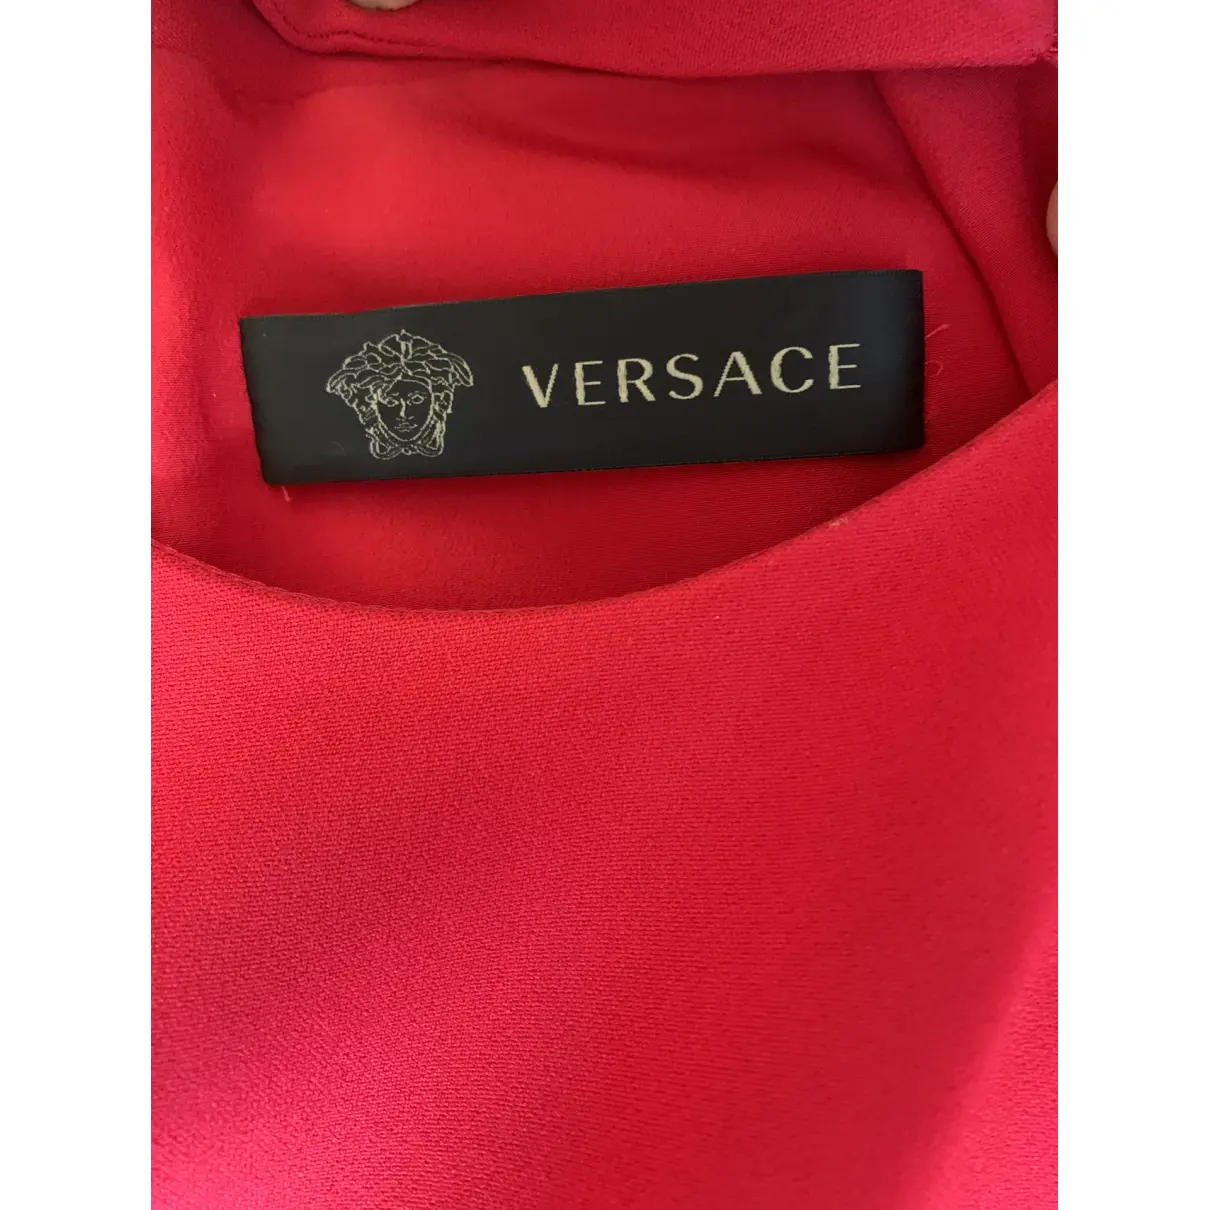 Buy Versace Mini dress online